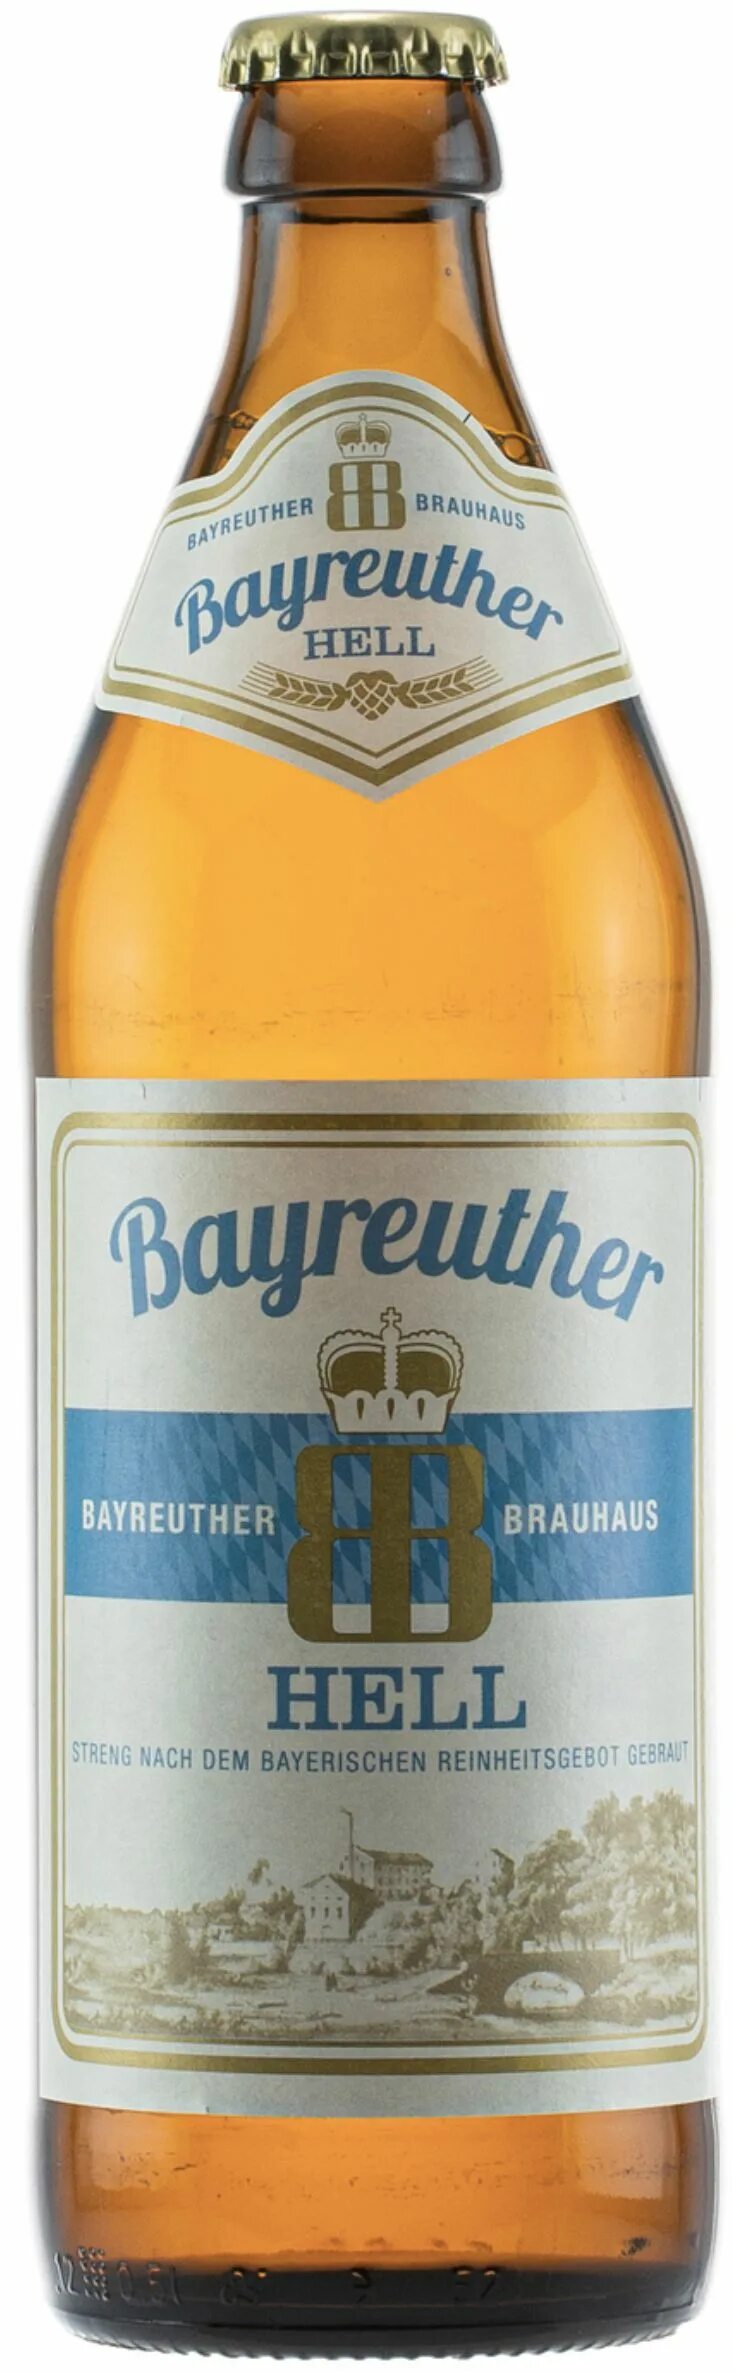 Hell пиво купить. Bayreuther Hell пиво светлое. Байройтер Хель (Bayreuther Hell). Пиво Байройтер Хель 0,5. Пиво светлое непастеризованное фильтрованное Байройтер Хель.